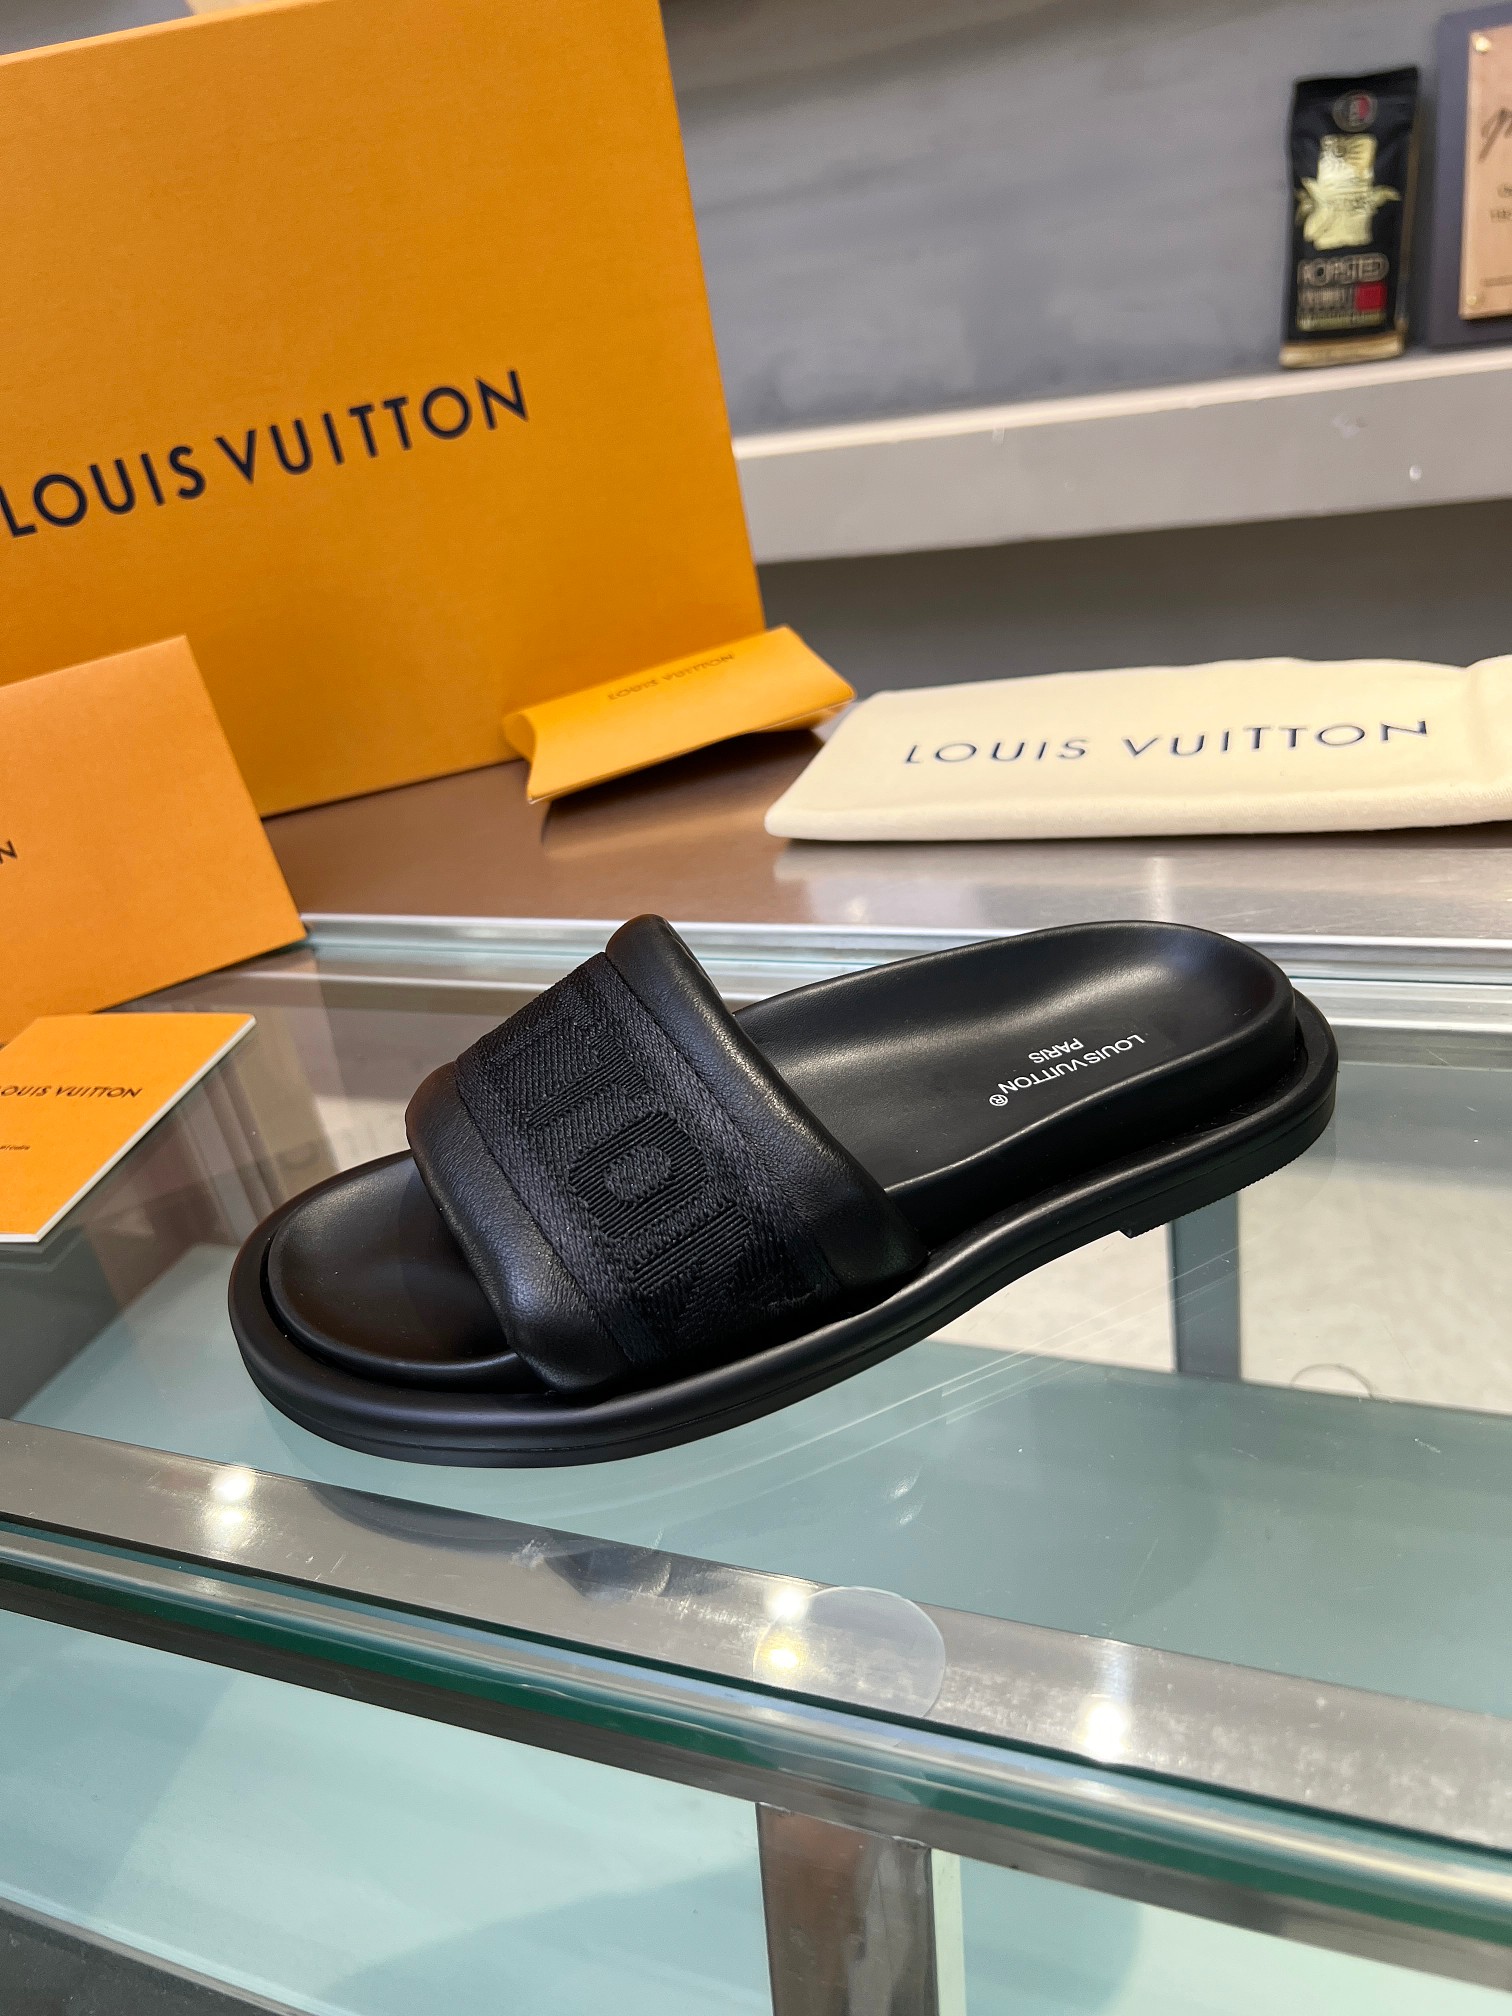 Grado di alto livello Louis Vuitton Scarpe Sandali Pantofole Beige Nero Grigio Bianco Unisex Pelle pecora Fashion Casual